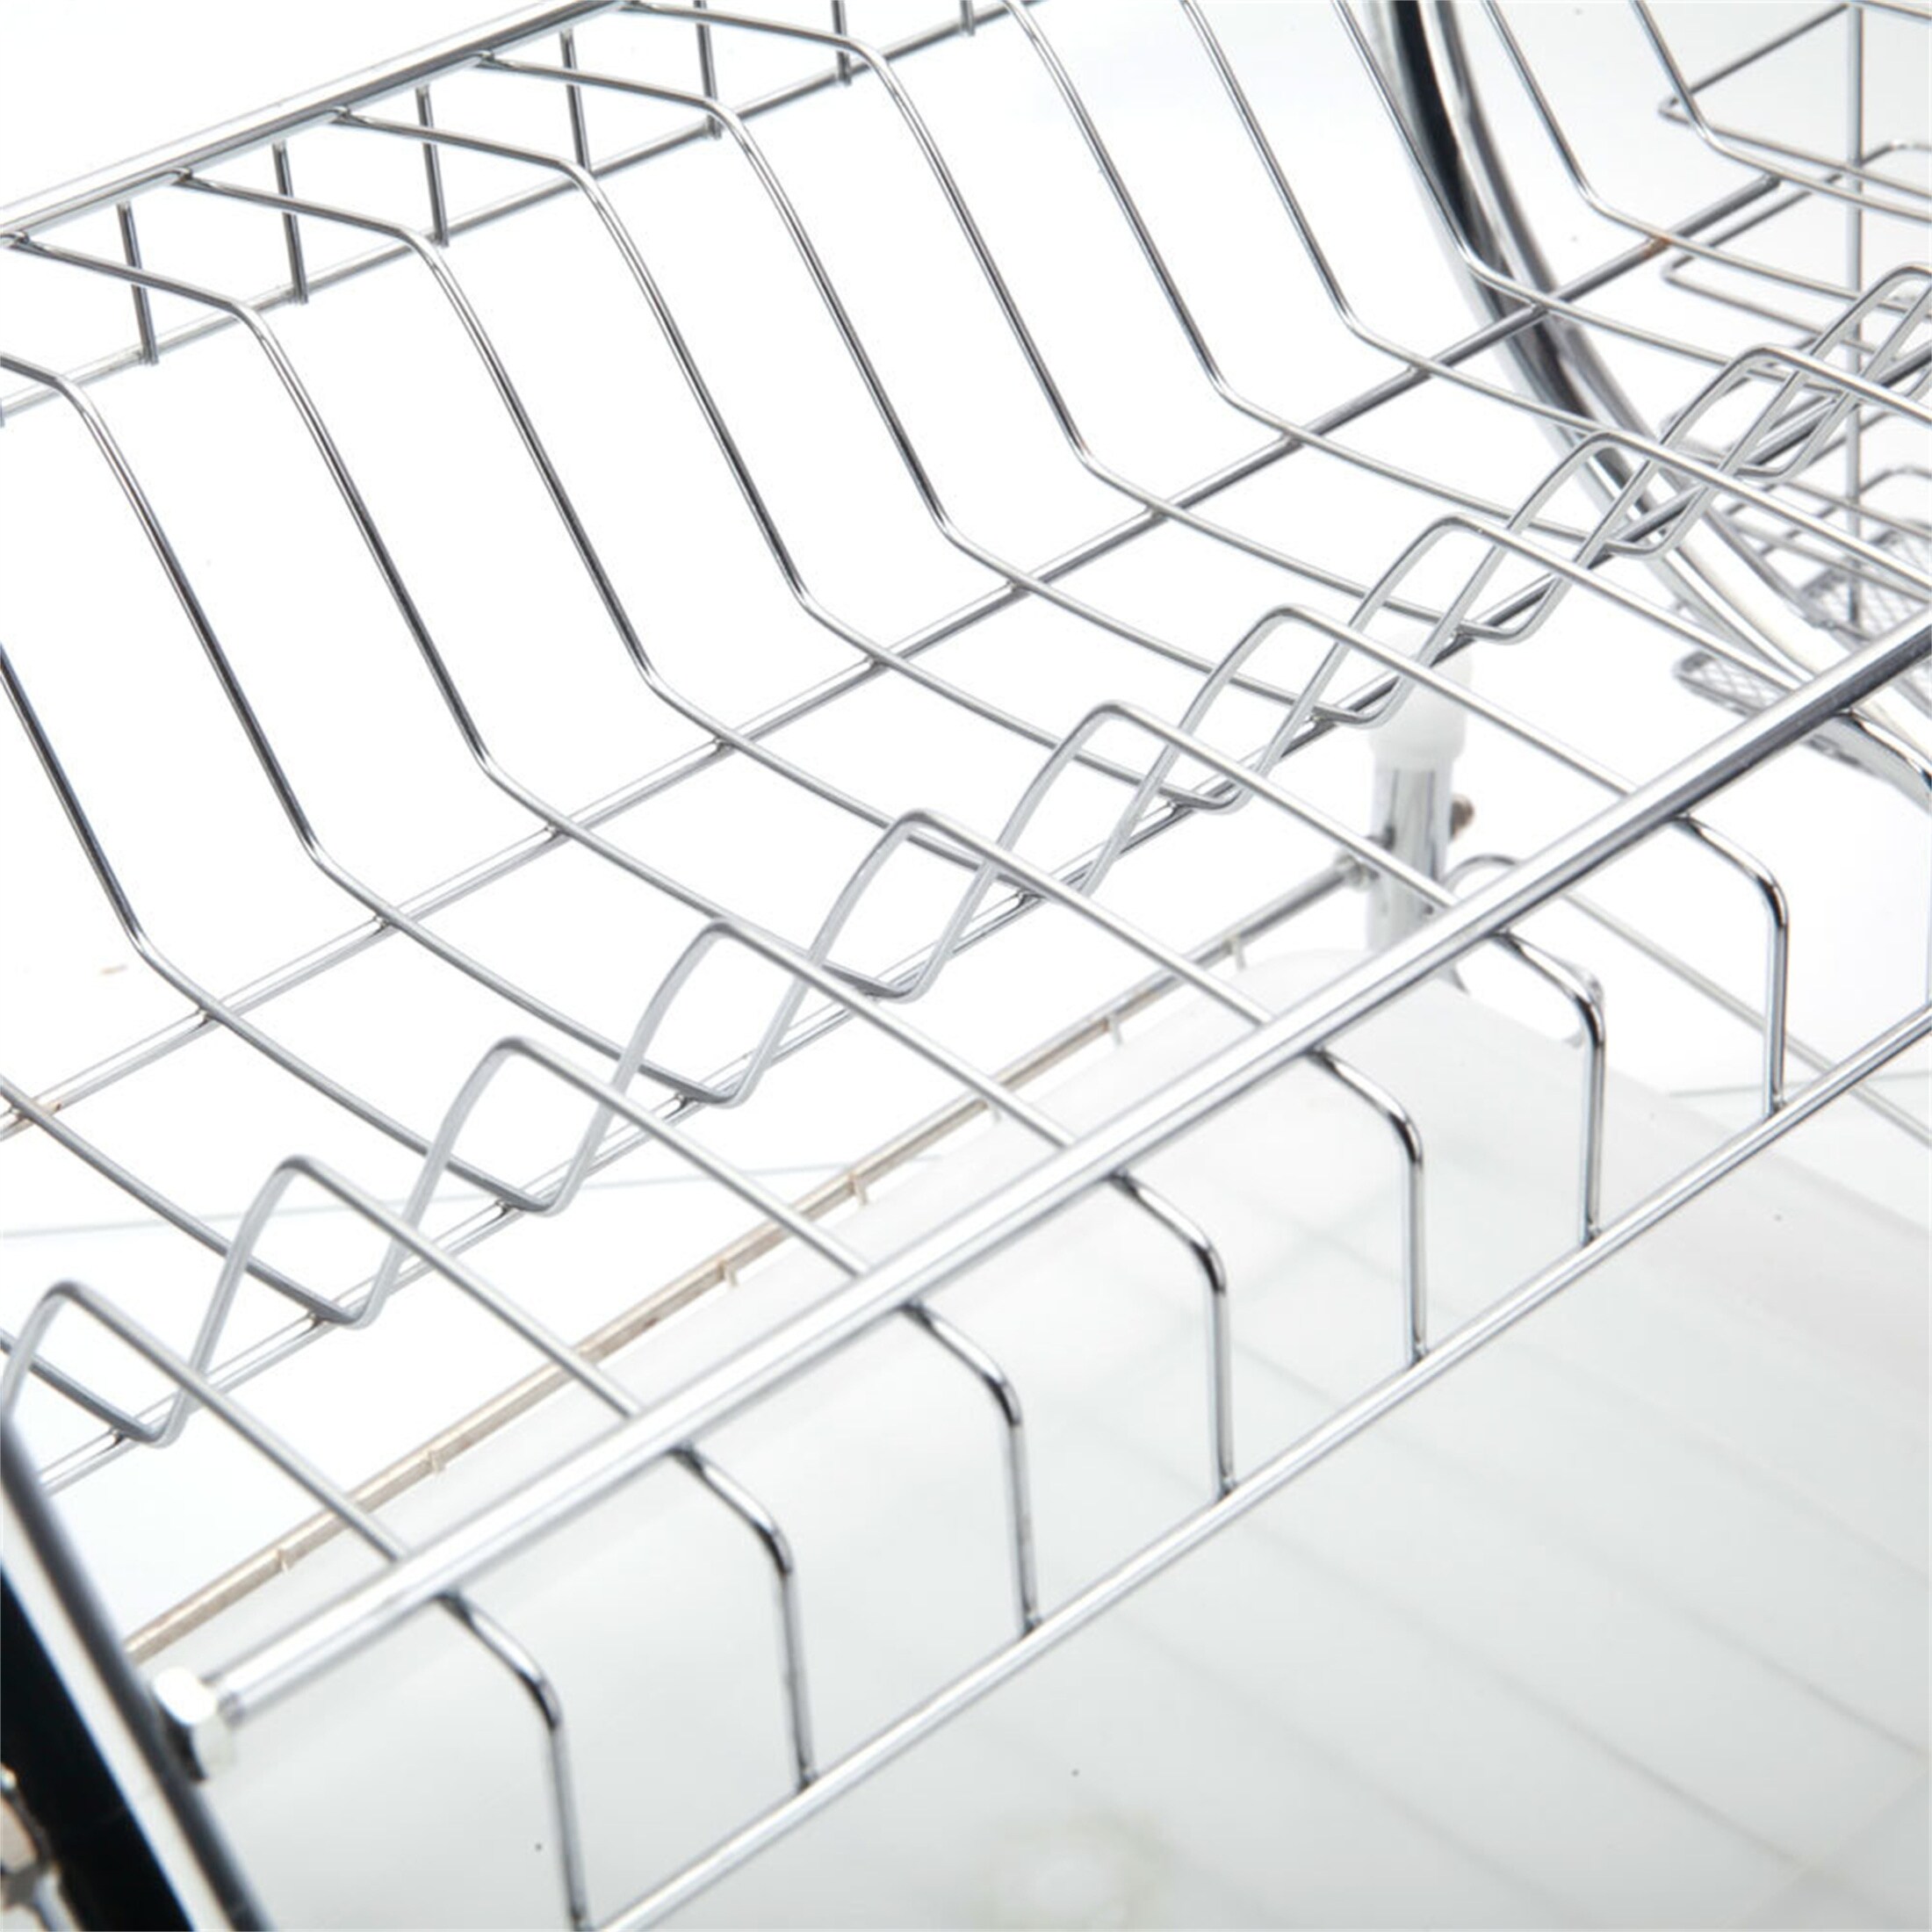 2 Tier Dish Drainer Drying Rack Kitchen Storage Holder Washing Organizer -  Bed Bath & Beyond - 31118396